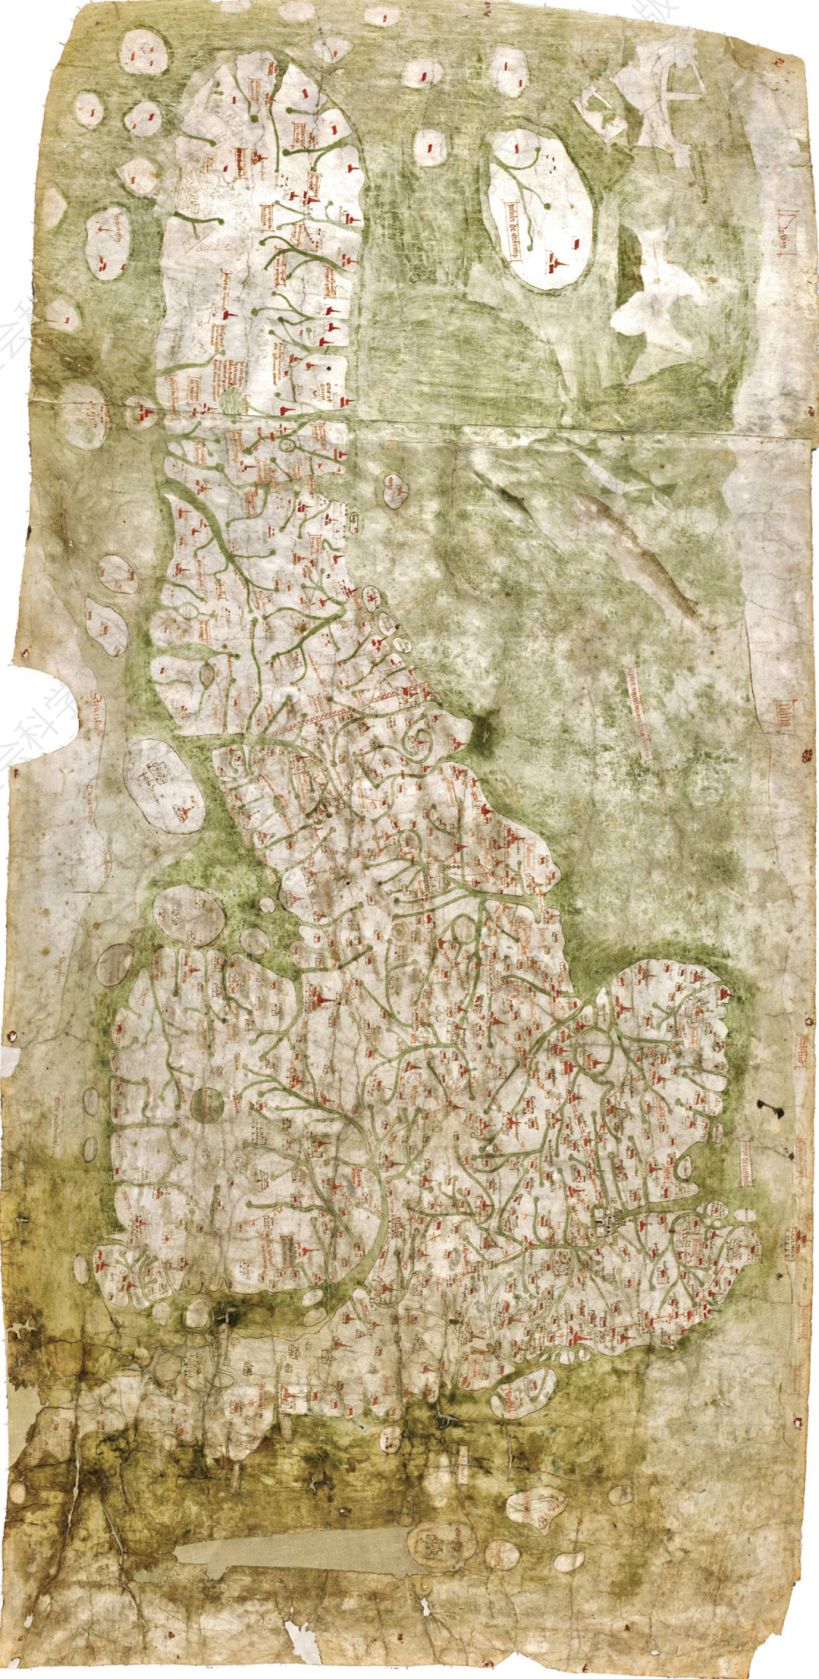 Gough的不列颠地图，约1360年。到14世纪，英格兰普通民众已经认识到自己的国家是一个整体，会为了捍卫祖国的利益而战斗。